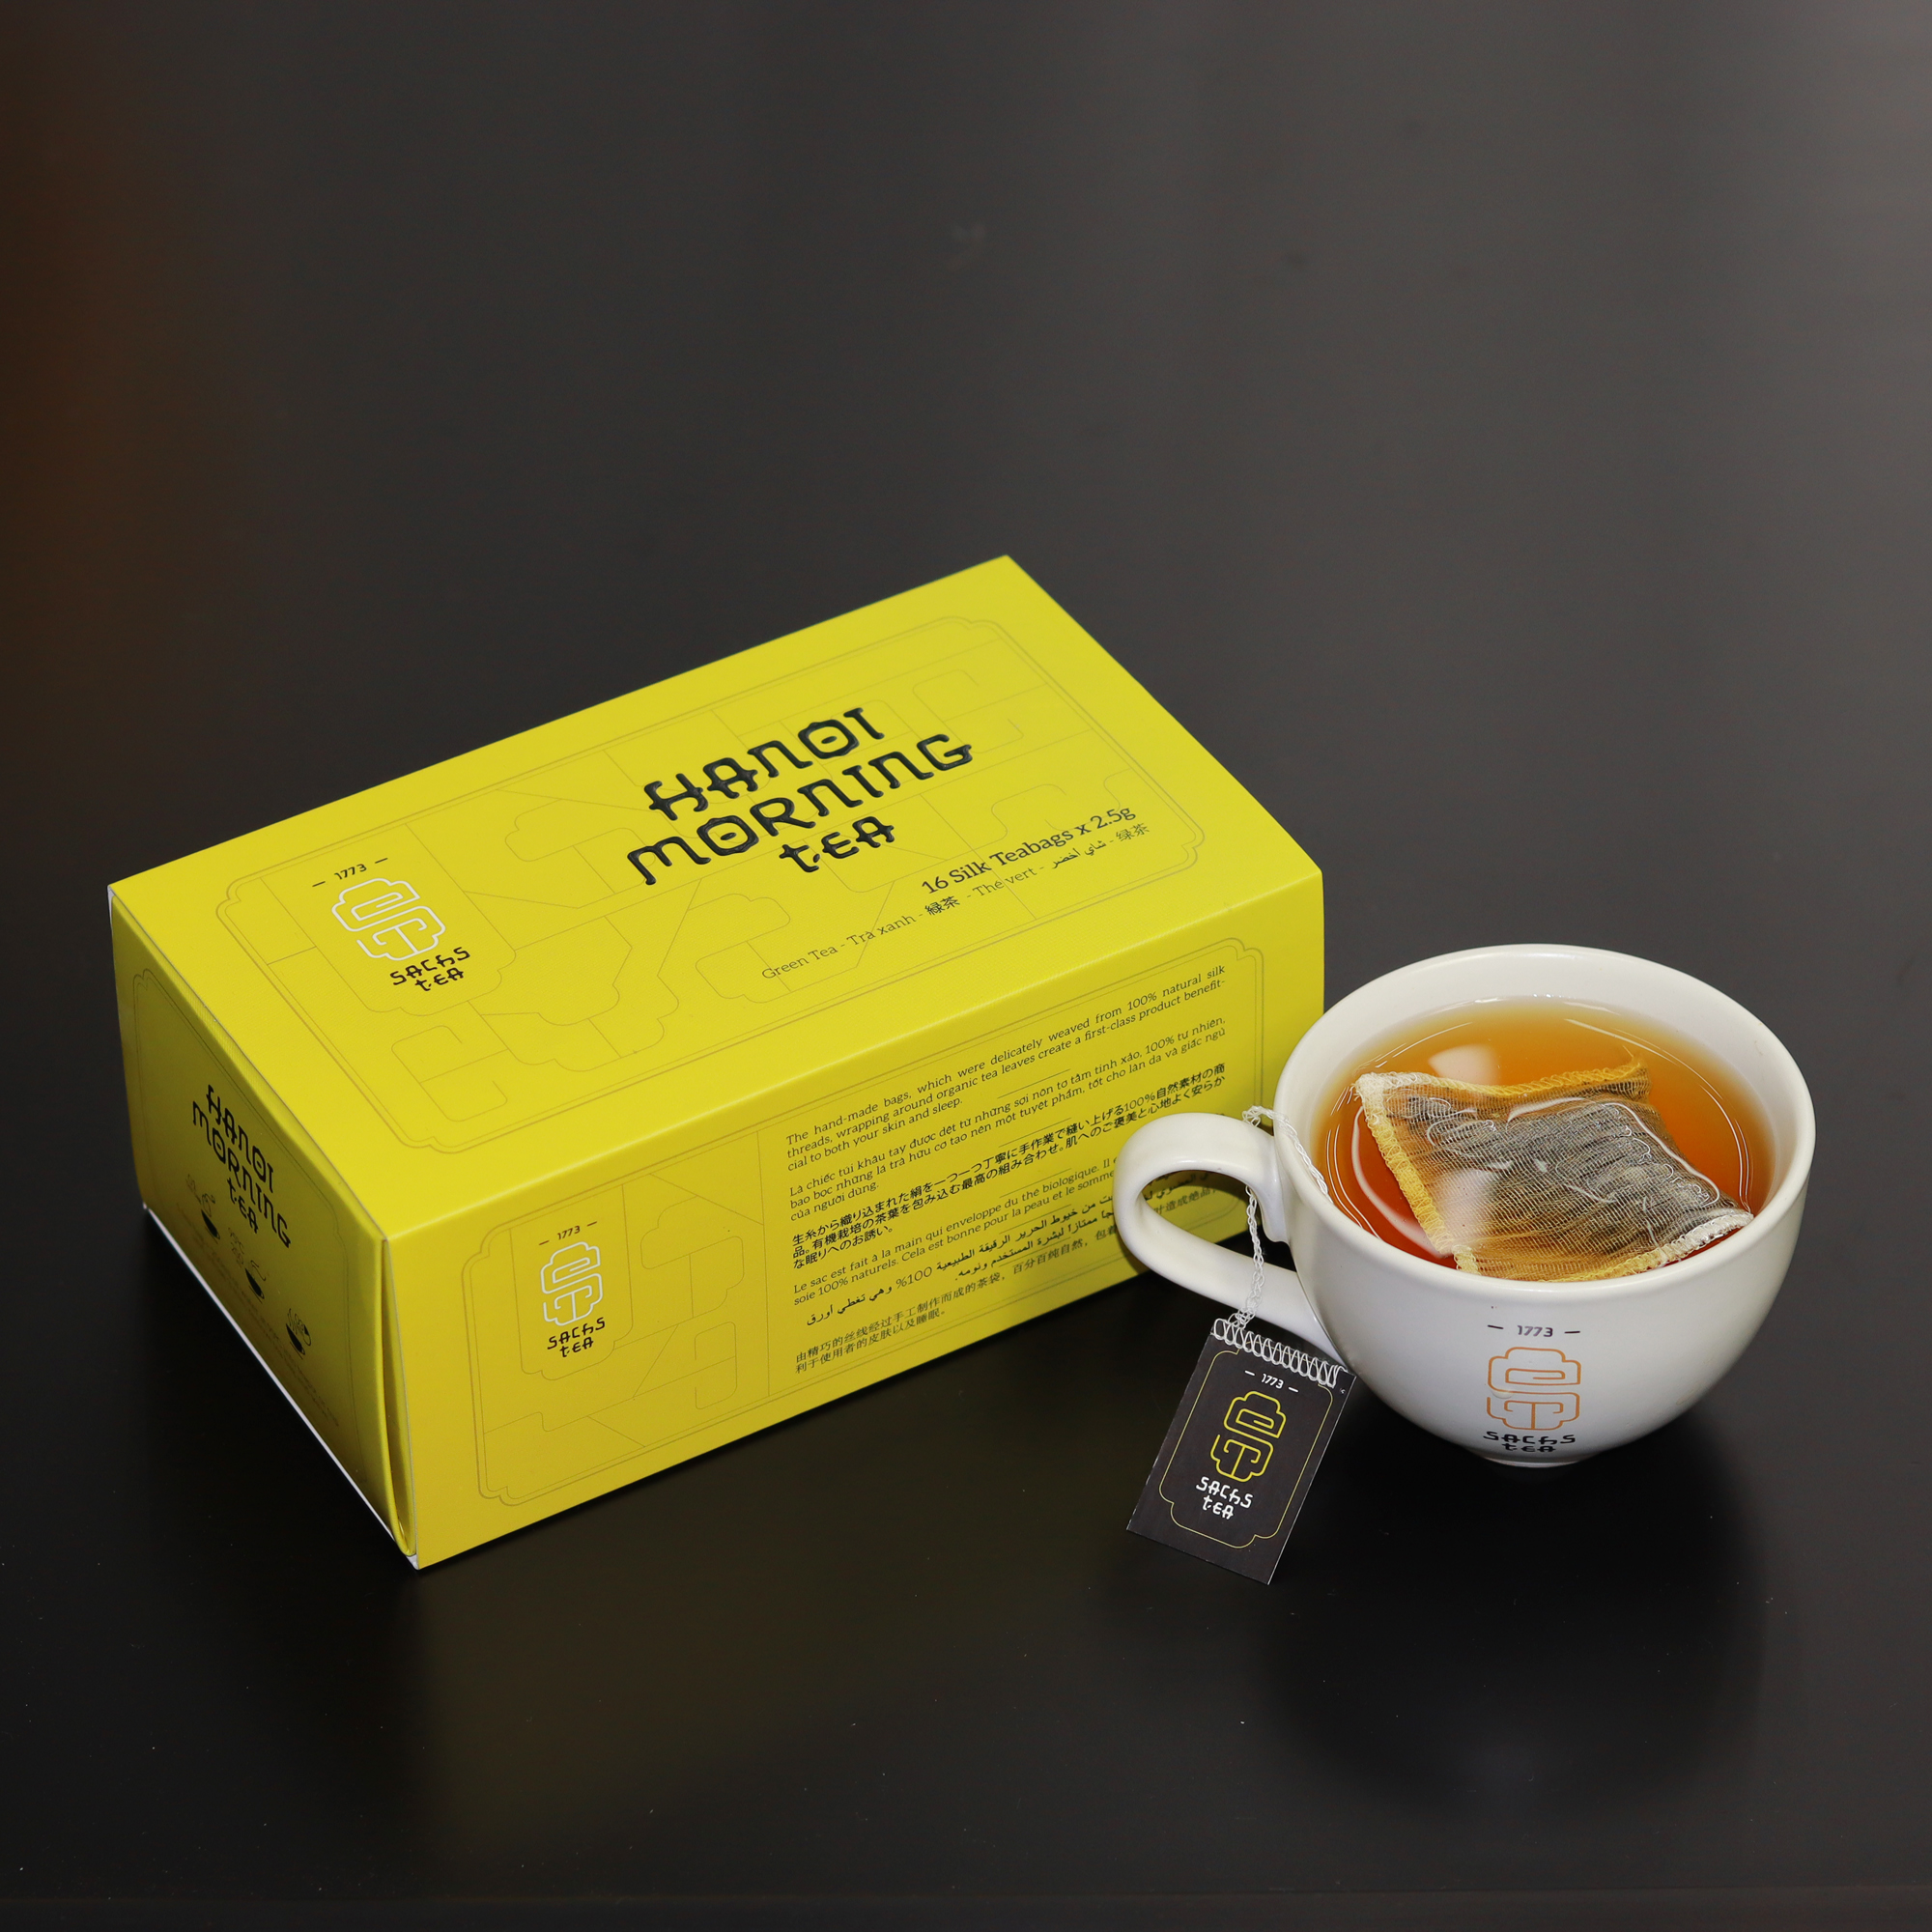 Trà túi lọc Hanoi Morning Tea SACHS TEA 1773 chè hữu cơ thái nguyên cao cấp thanh lịch dễ sử dụng 16 túi/hộp